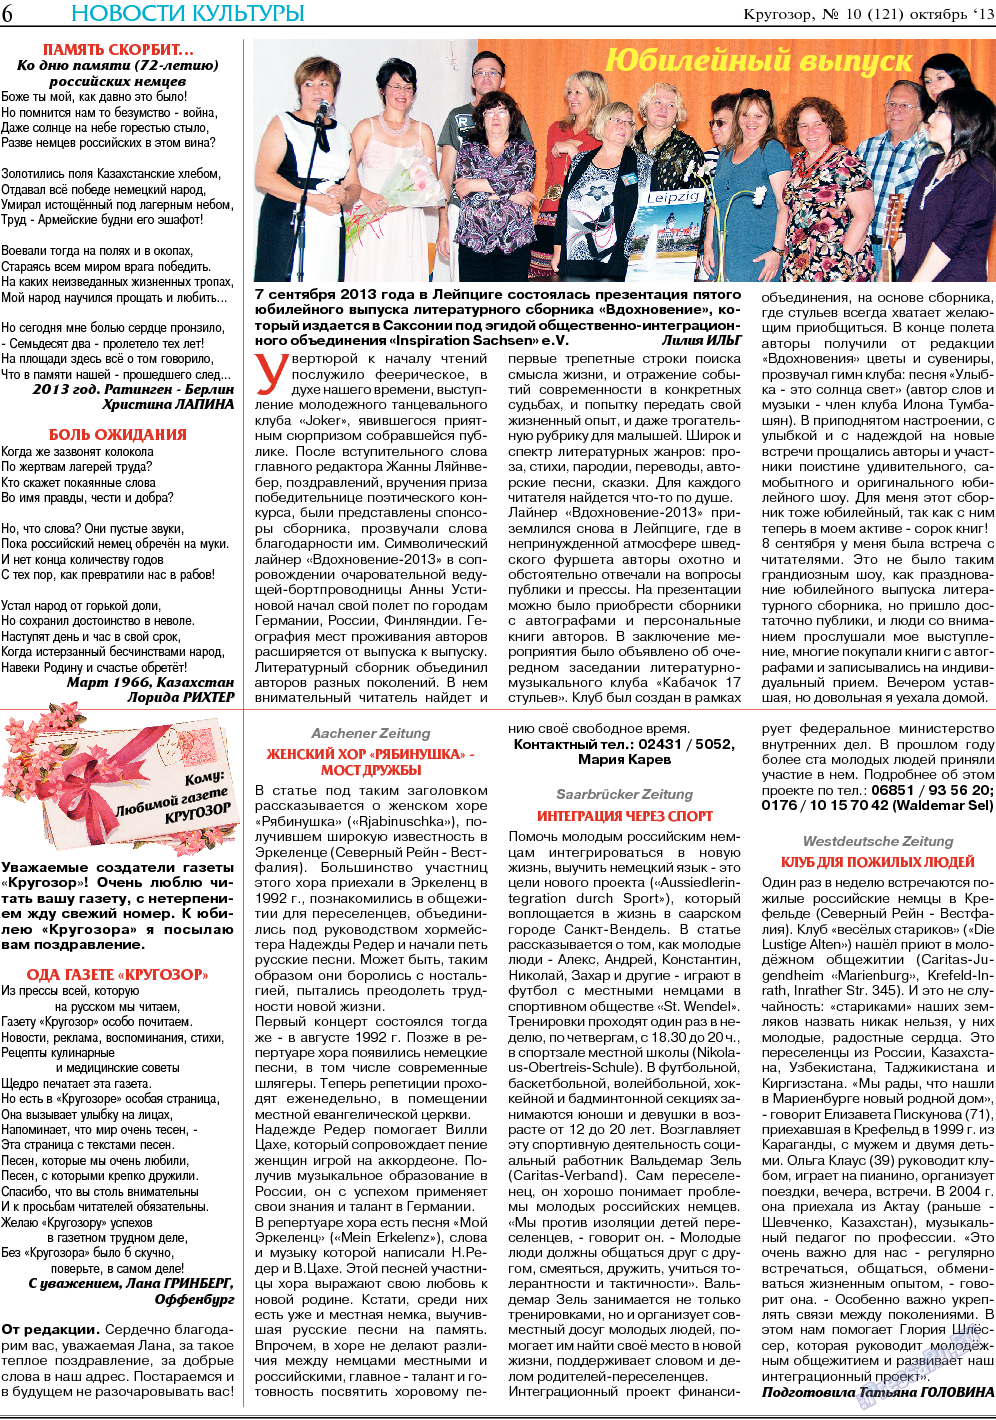 Кругозор, газета. 2013 №10 стр.6